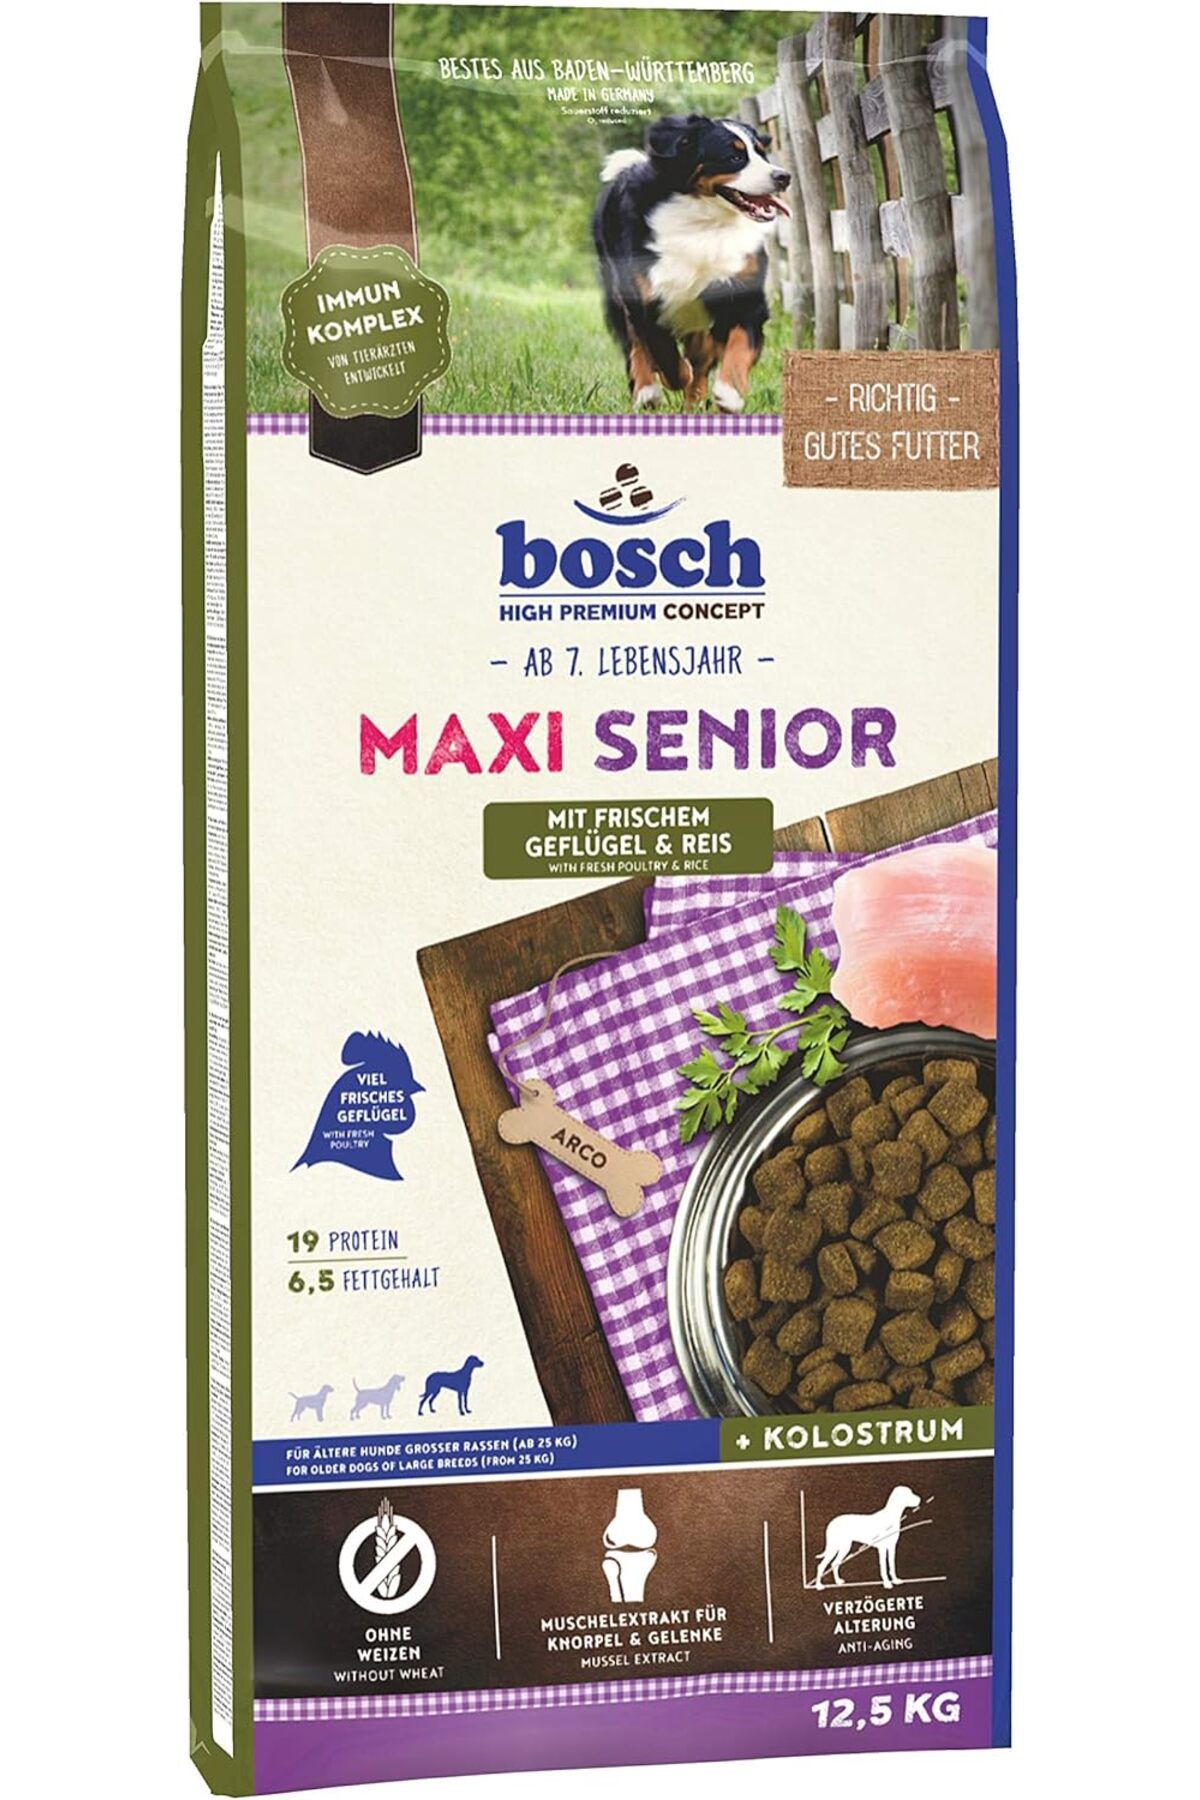 Bosch Maxi Senior Kümes Hayvanlı Büyük Irk Yaşlı Köpek Maması 12,5 Kg